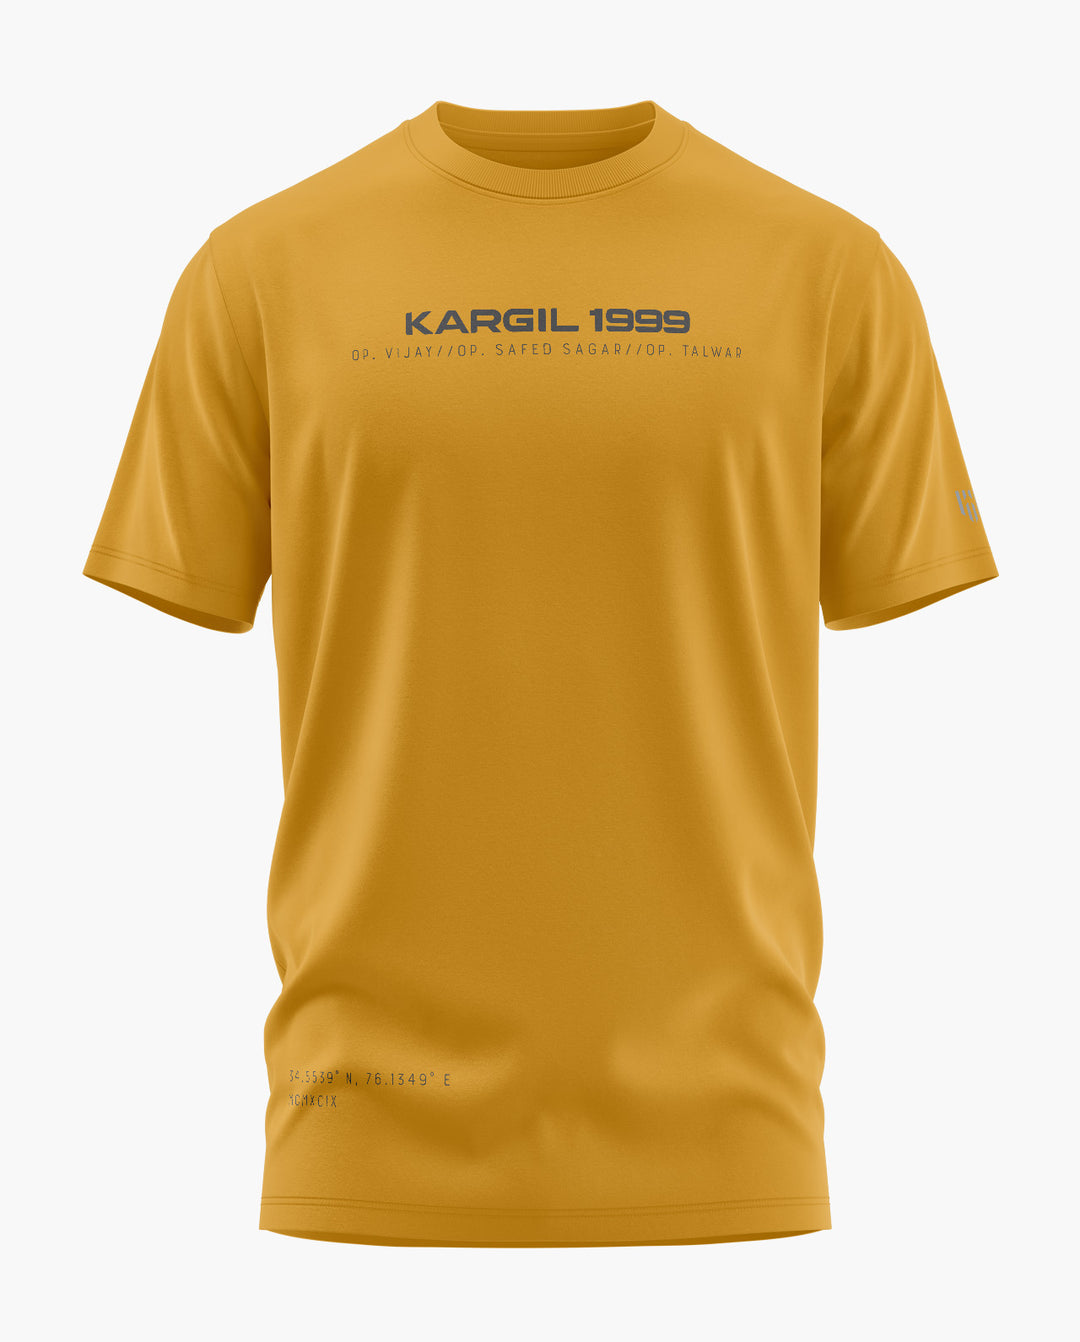 KARGIL 1999 T-Shirt